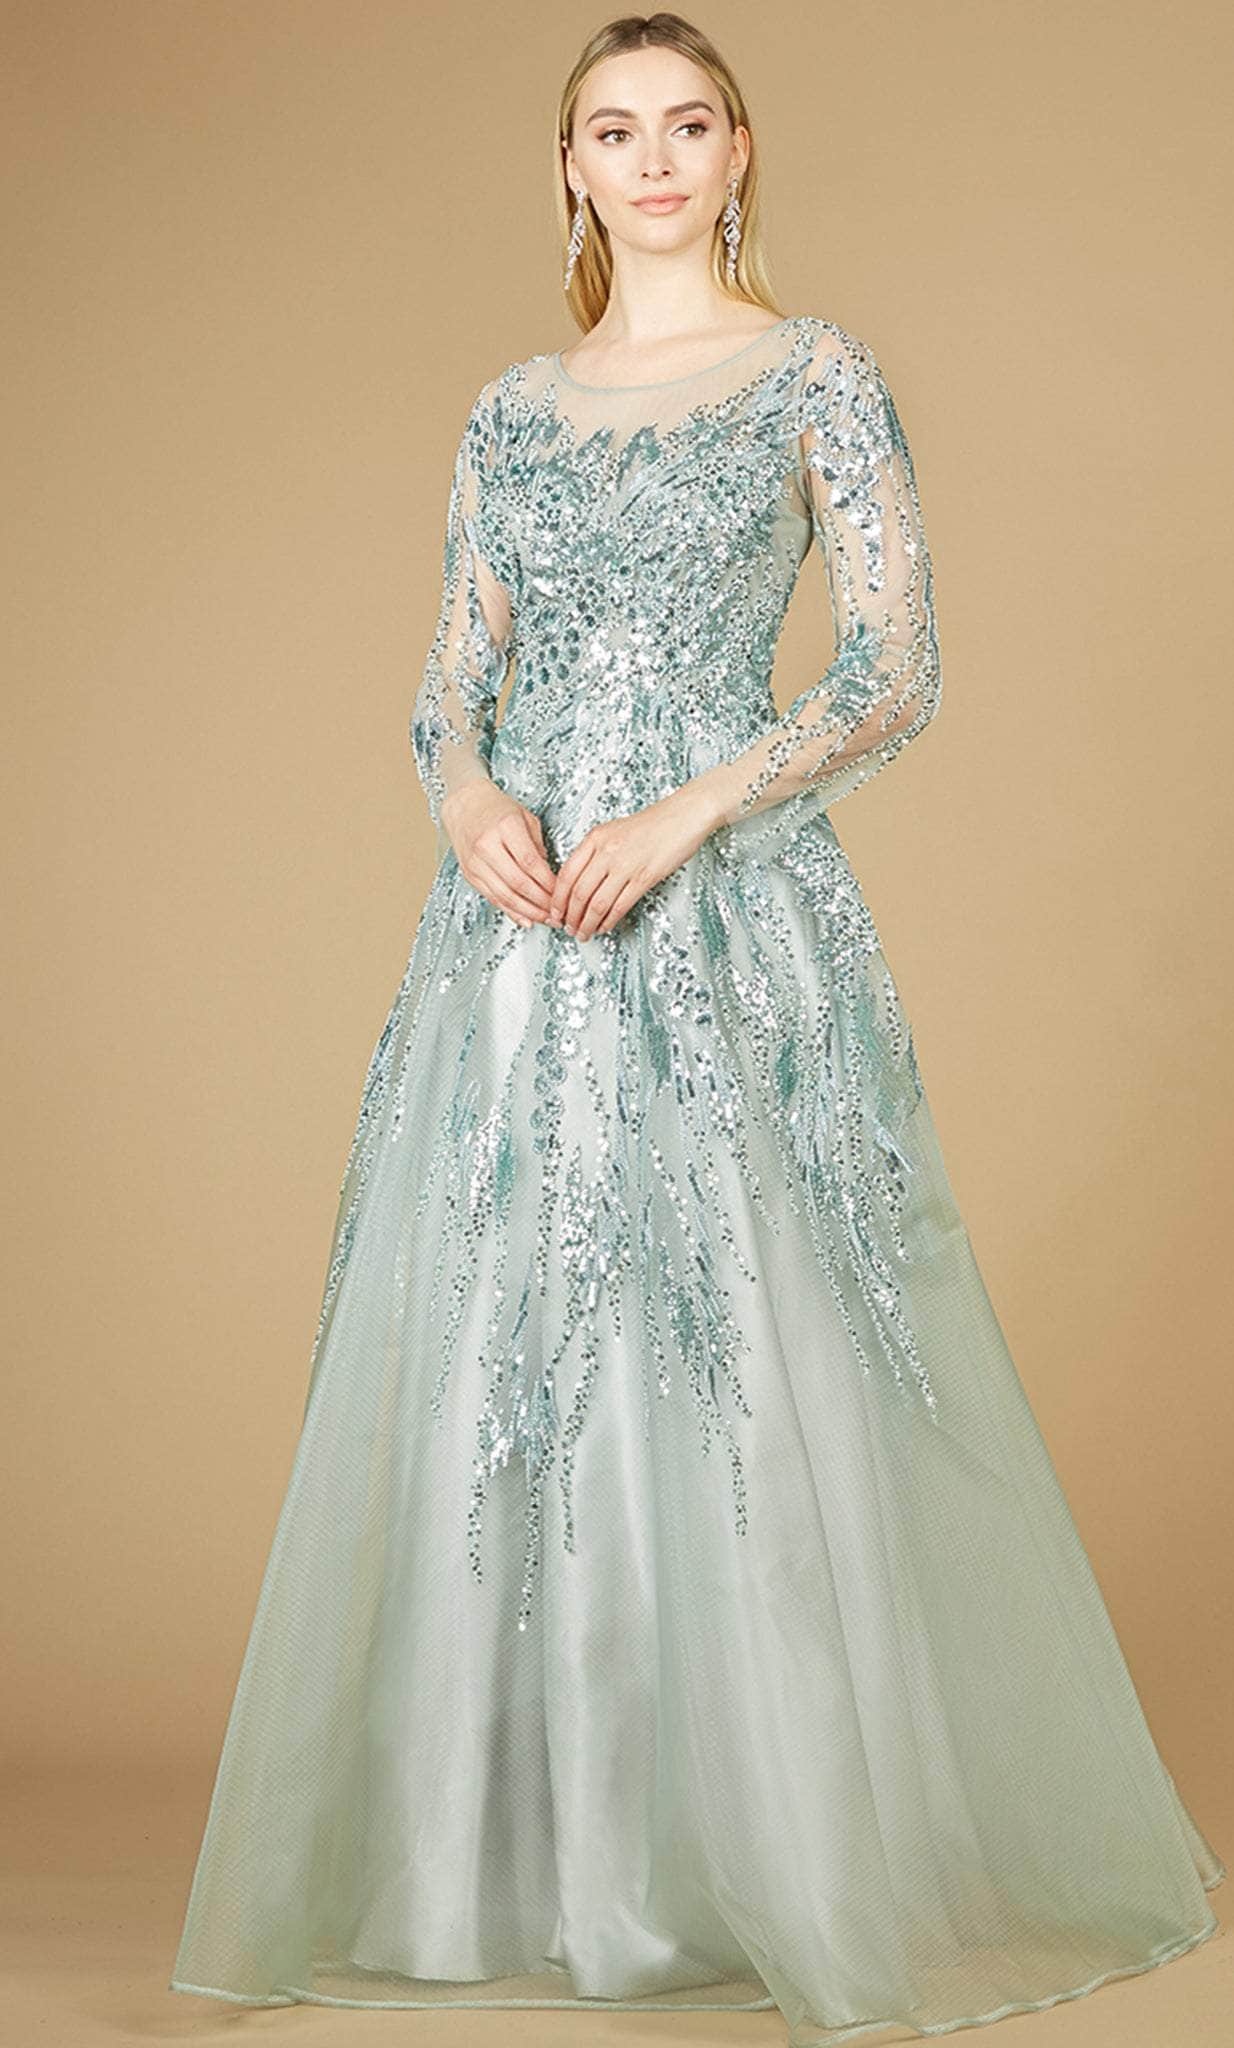 Image of Lara Dresses 29208 - Embellished A-Line Evening Dress